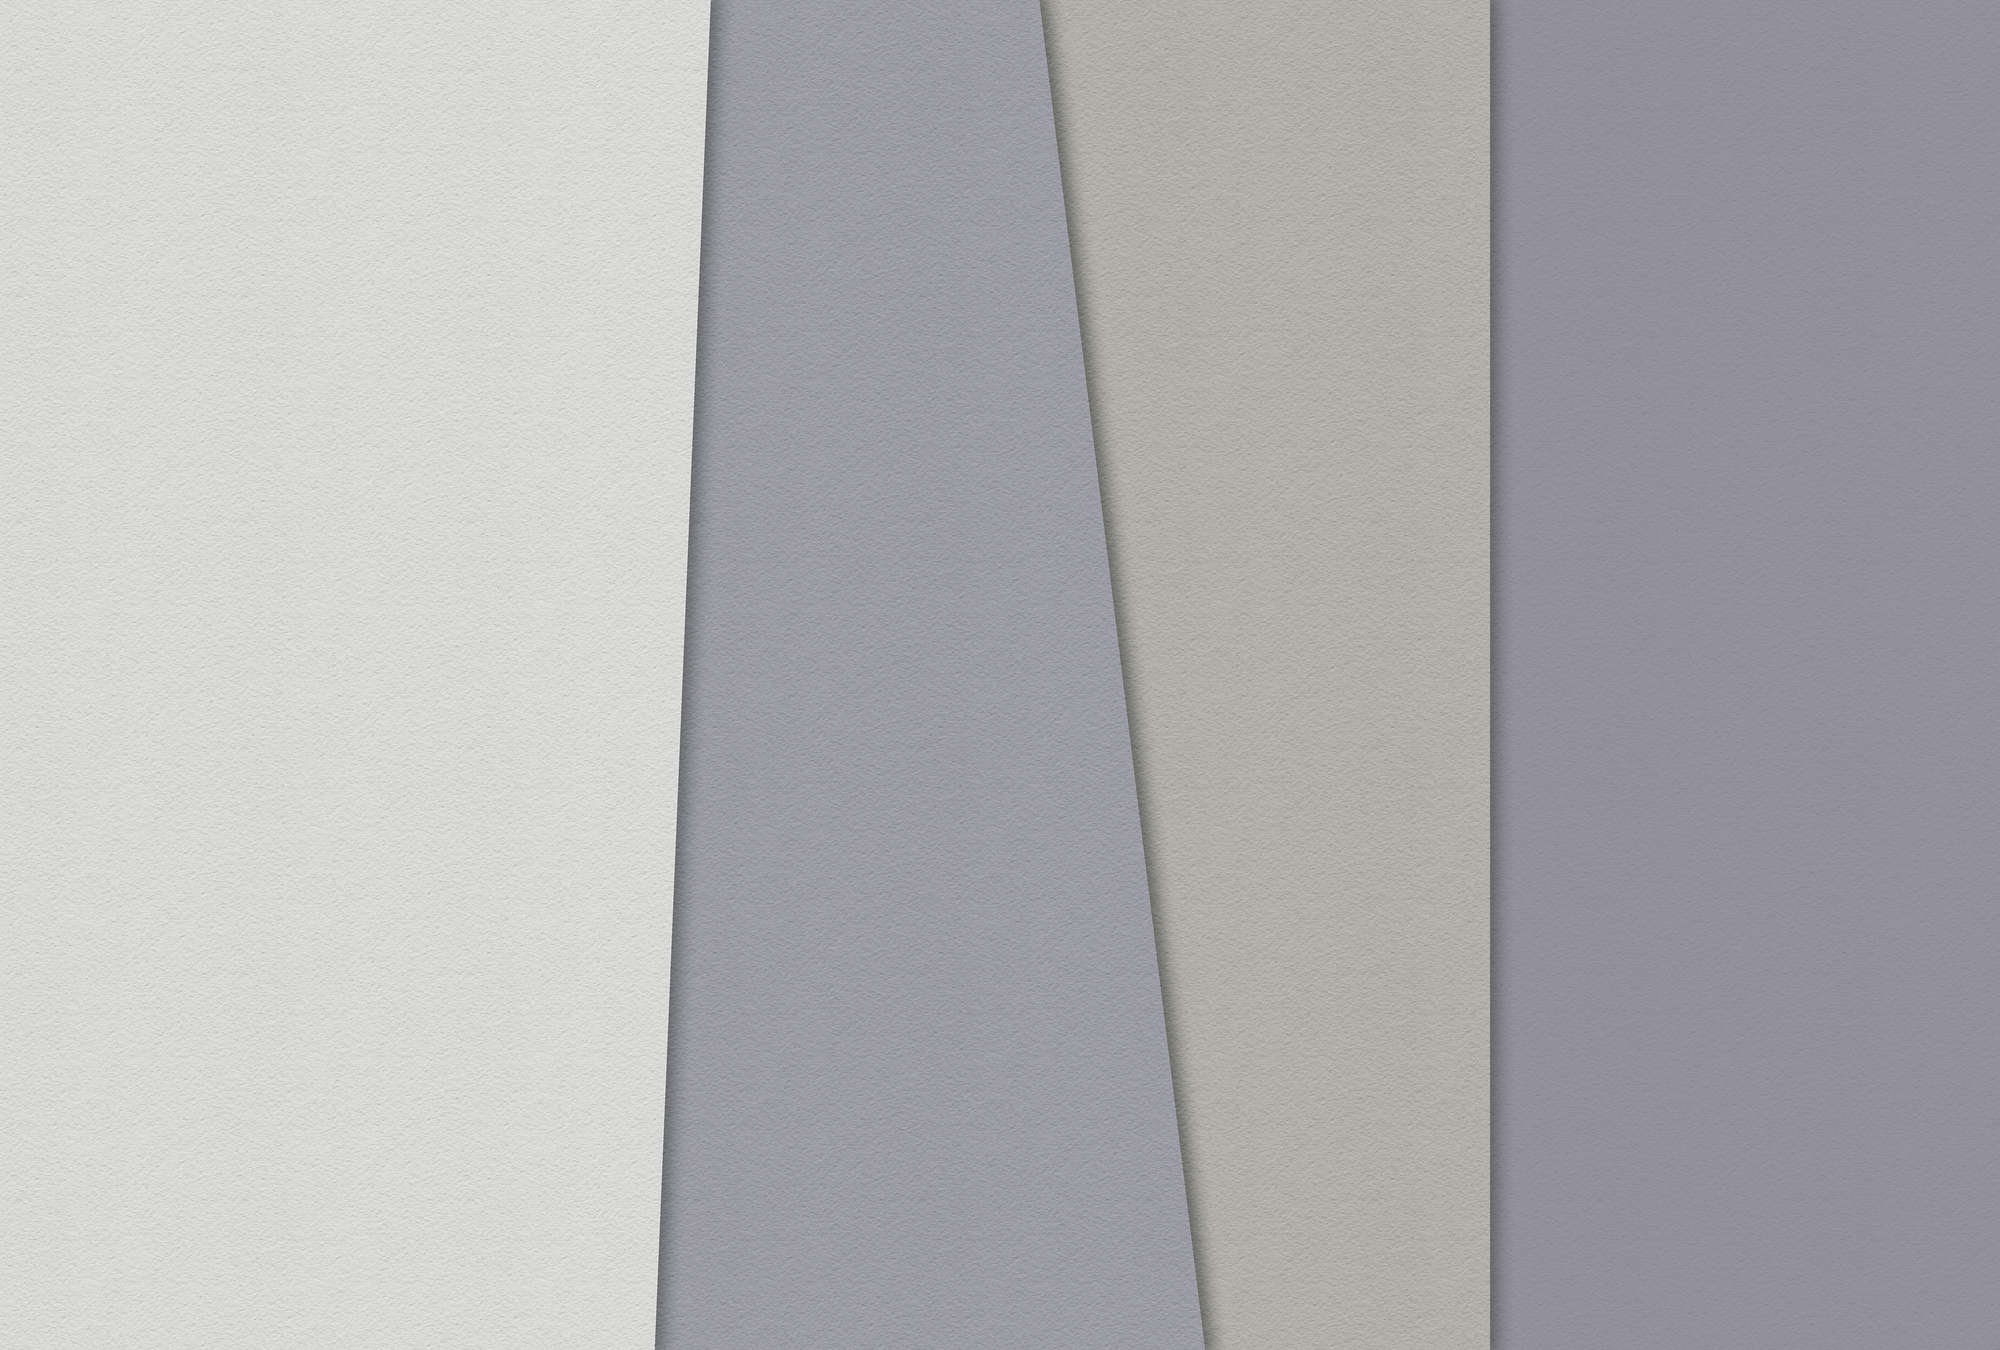             Papel estratificado 2 - Papel pintado gráfico, estructura de papel hecha a mano diseño minimalista - crema, verde | perla liso vellón
        